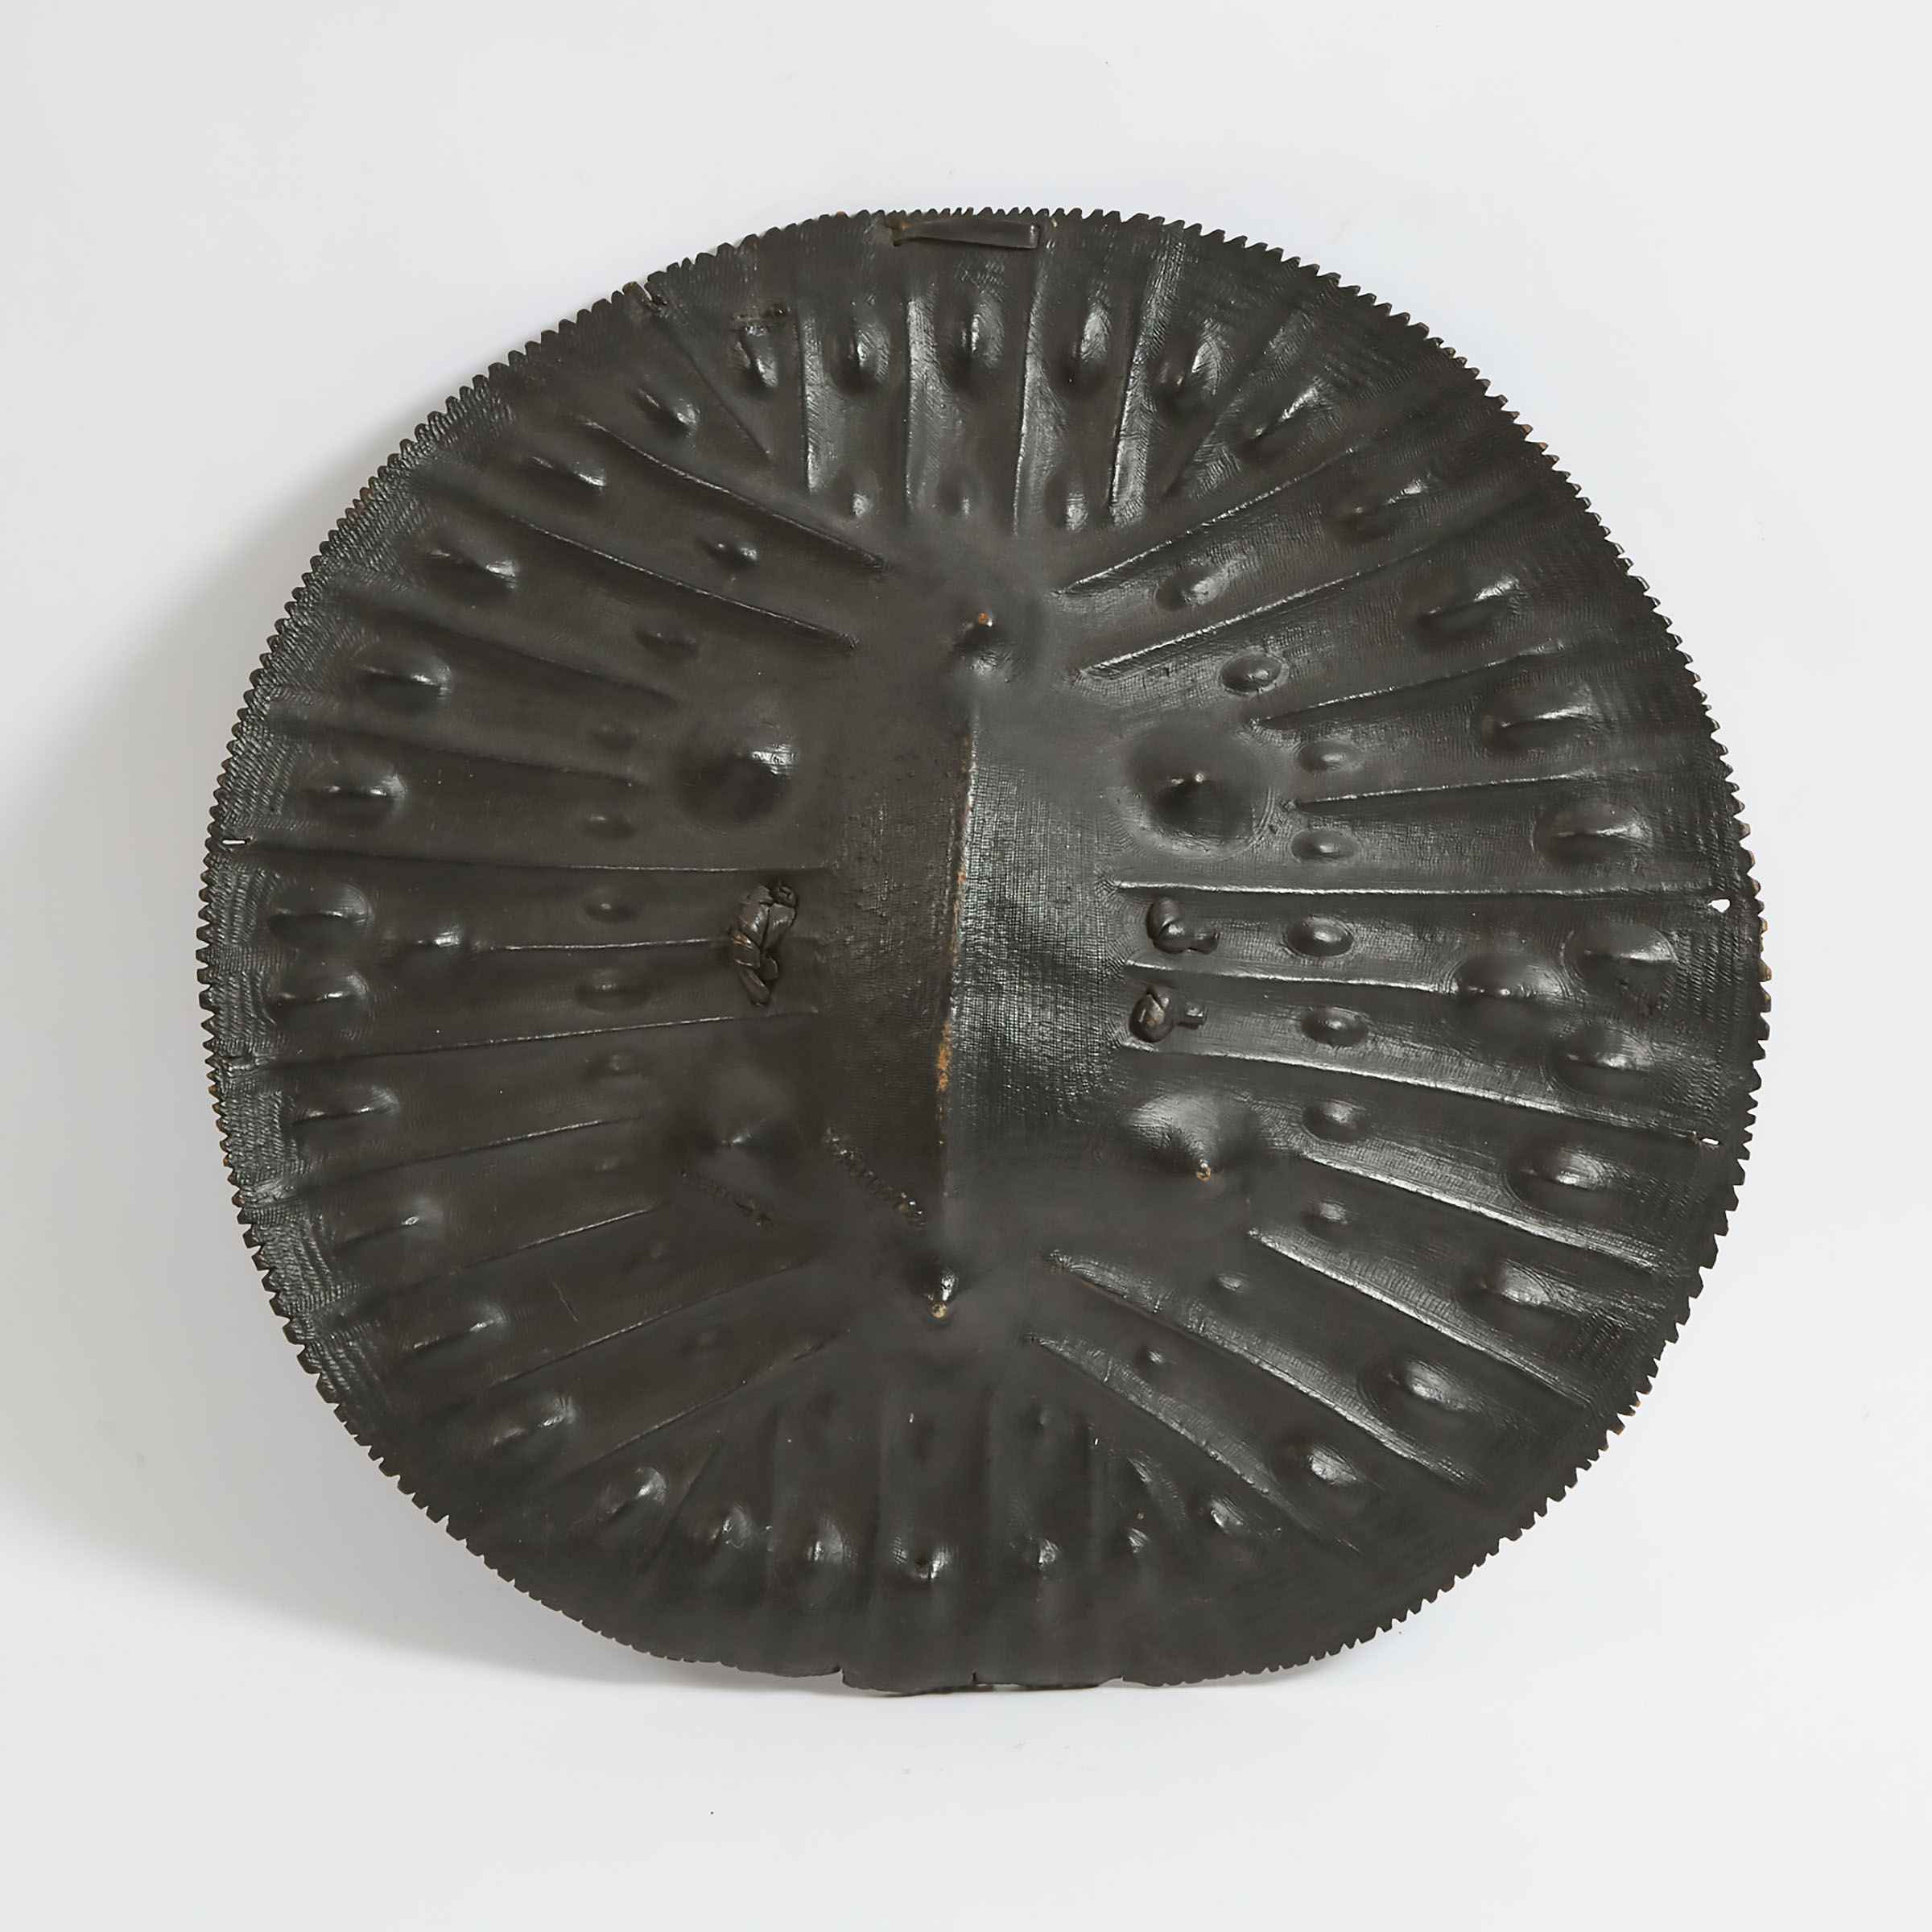 Oromo Shield, Ethiopia, early 20th century